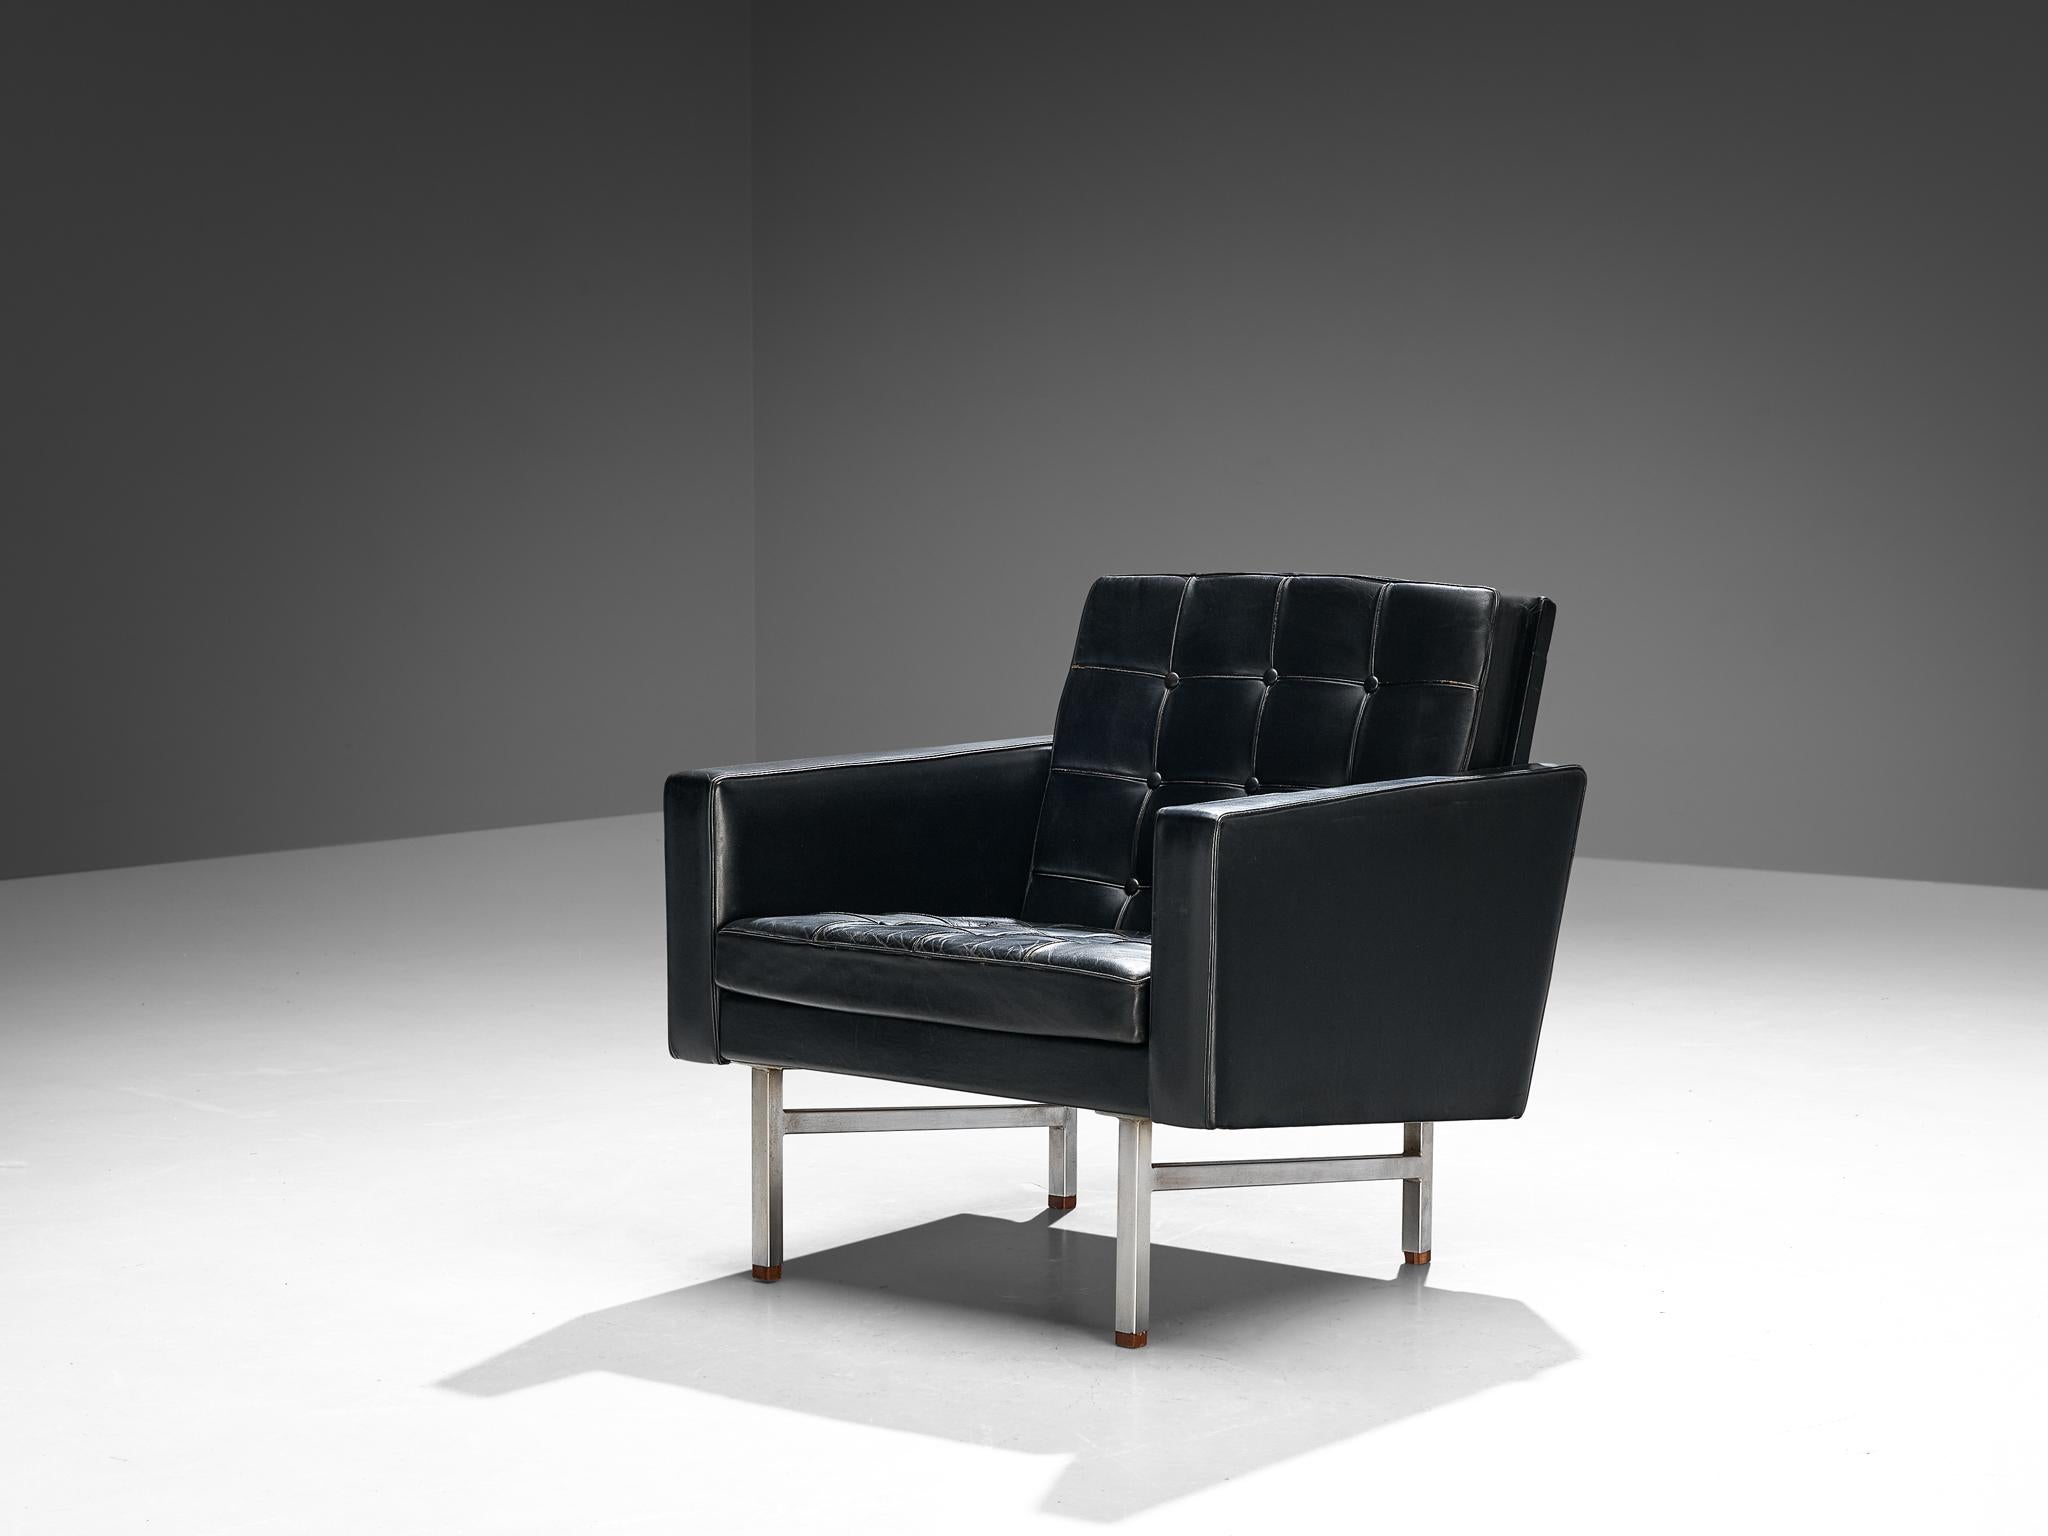 Karl Erik Steele, chaise longue, cuir, acier chromé, noyer, Suède, années 1960.

Ce fauteuil est exécuté en cuir noir d'origine. L'assise et le dossier touffetés, combinés au corpus net et droit et au cadre en acier poli, confèrent à la chaise